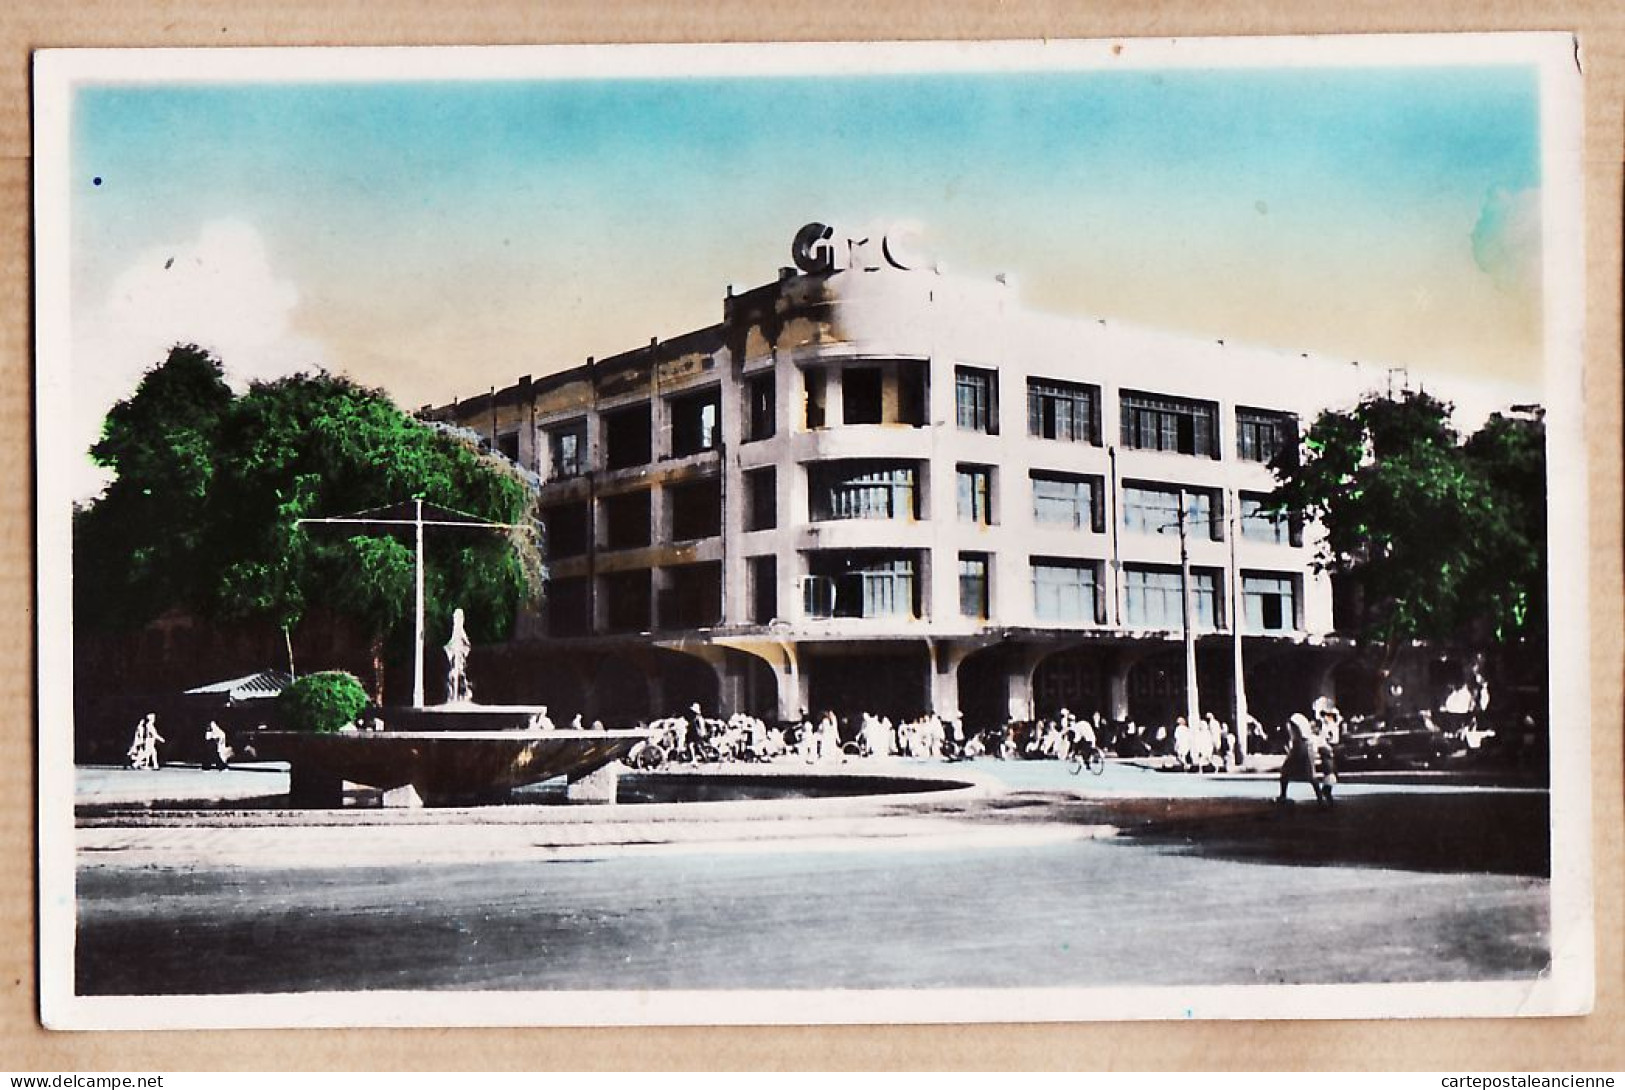 01032 ● Viet-nam Tonkin SAIGON - G.M.C Grands Magasins CHARNER Surélevés D'un Nouvel étage 1950s Indo-Chine  - Viêt-Nam